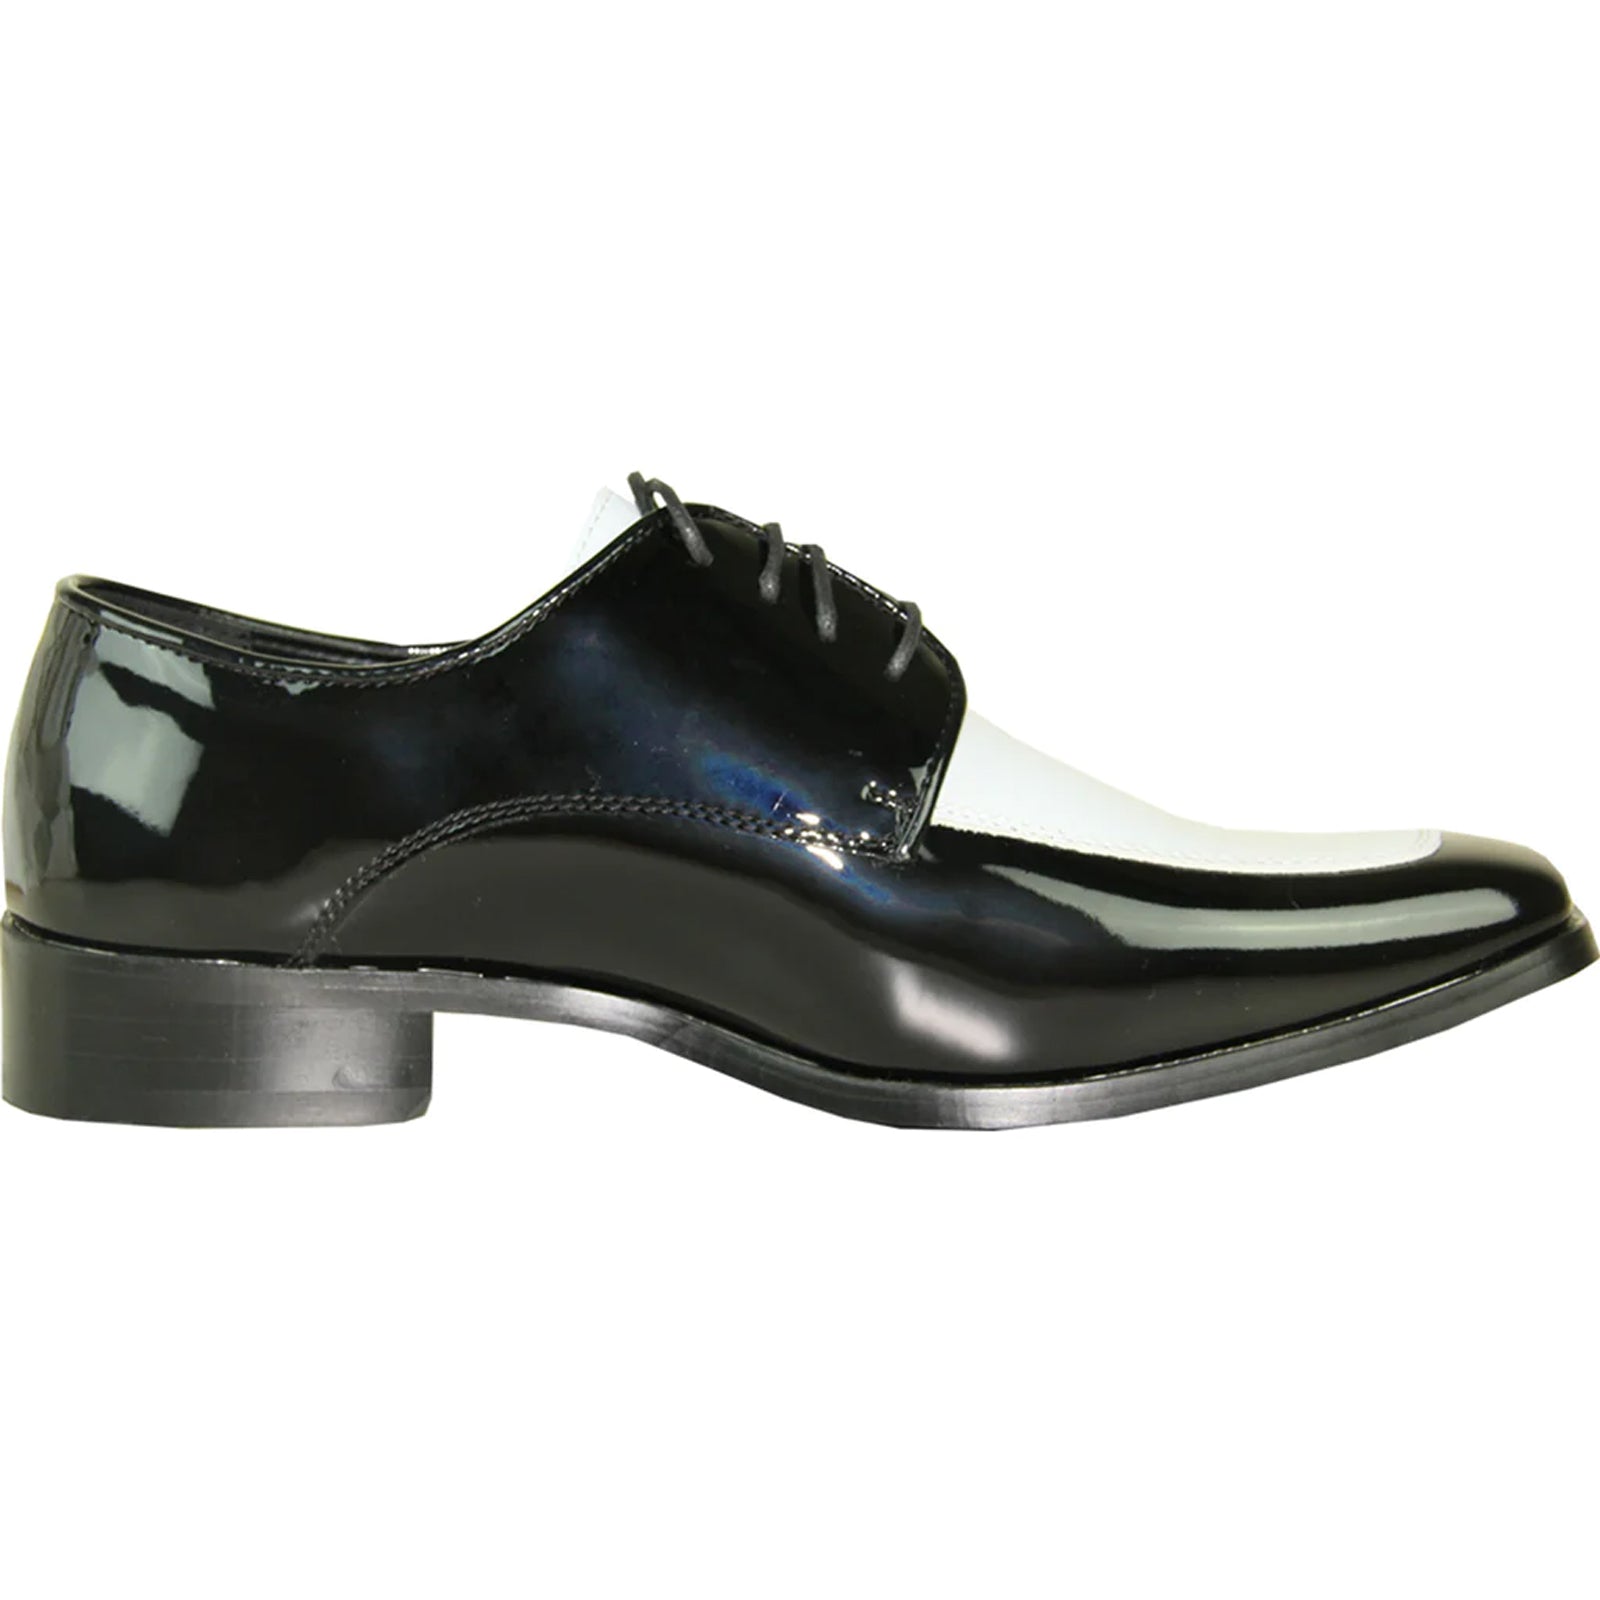 "Men's Classic Moc Toe Patent Tuxedo Prom Shoe - Black & White"